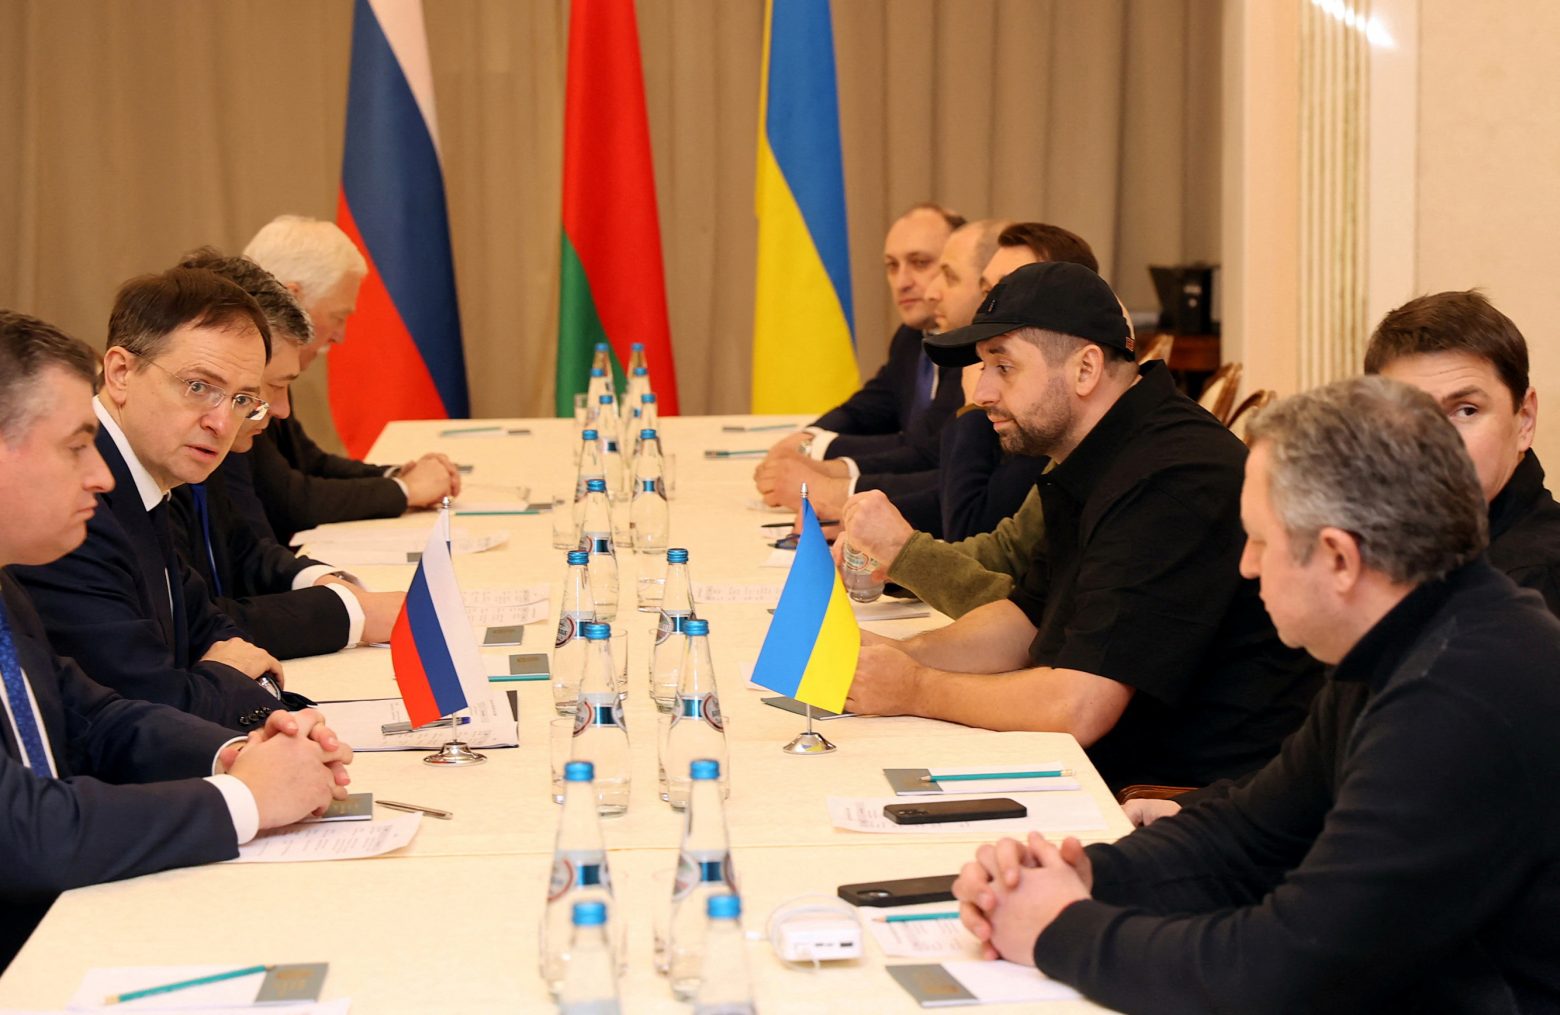 Πόλεμος στην Ουκρανία: Τη Δευτέρα ο τρίτος γύρος των διαπραγματεύσεων, σύμφωνα με ουκρανικές πηγές